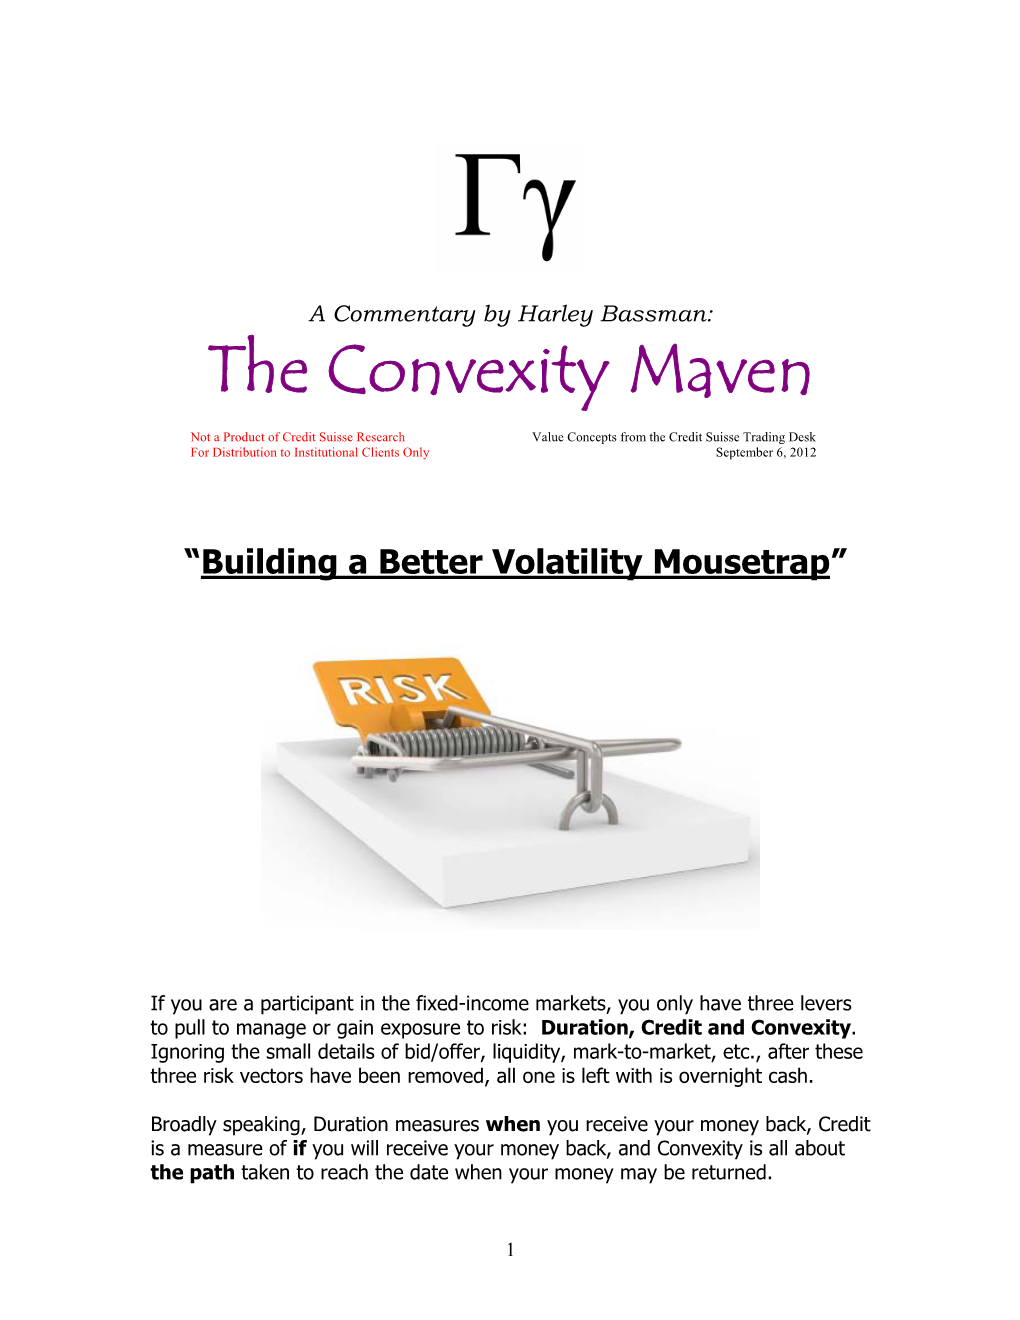 Building a Better Volatility Mousetrap”